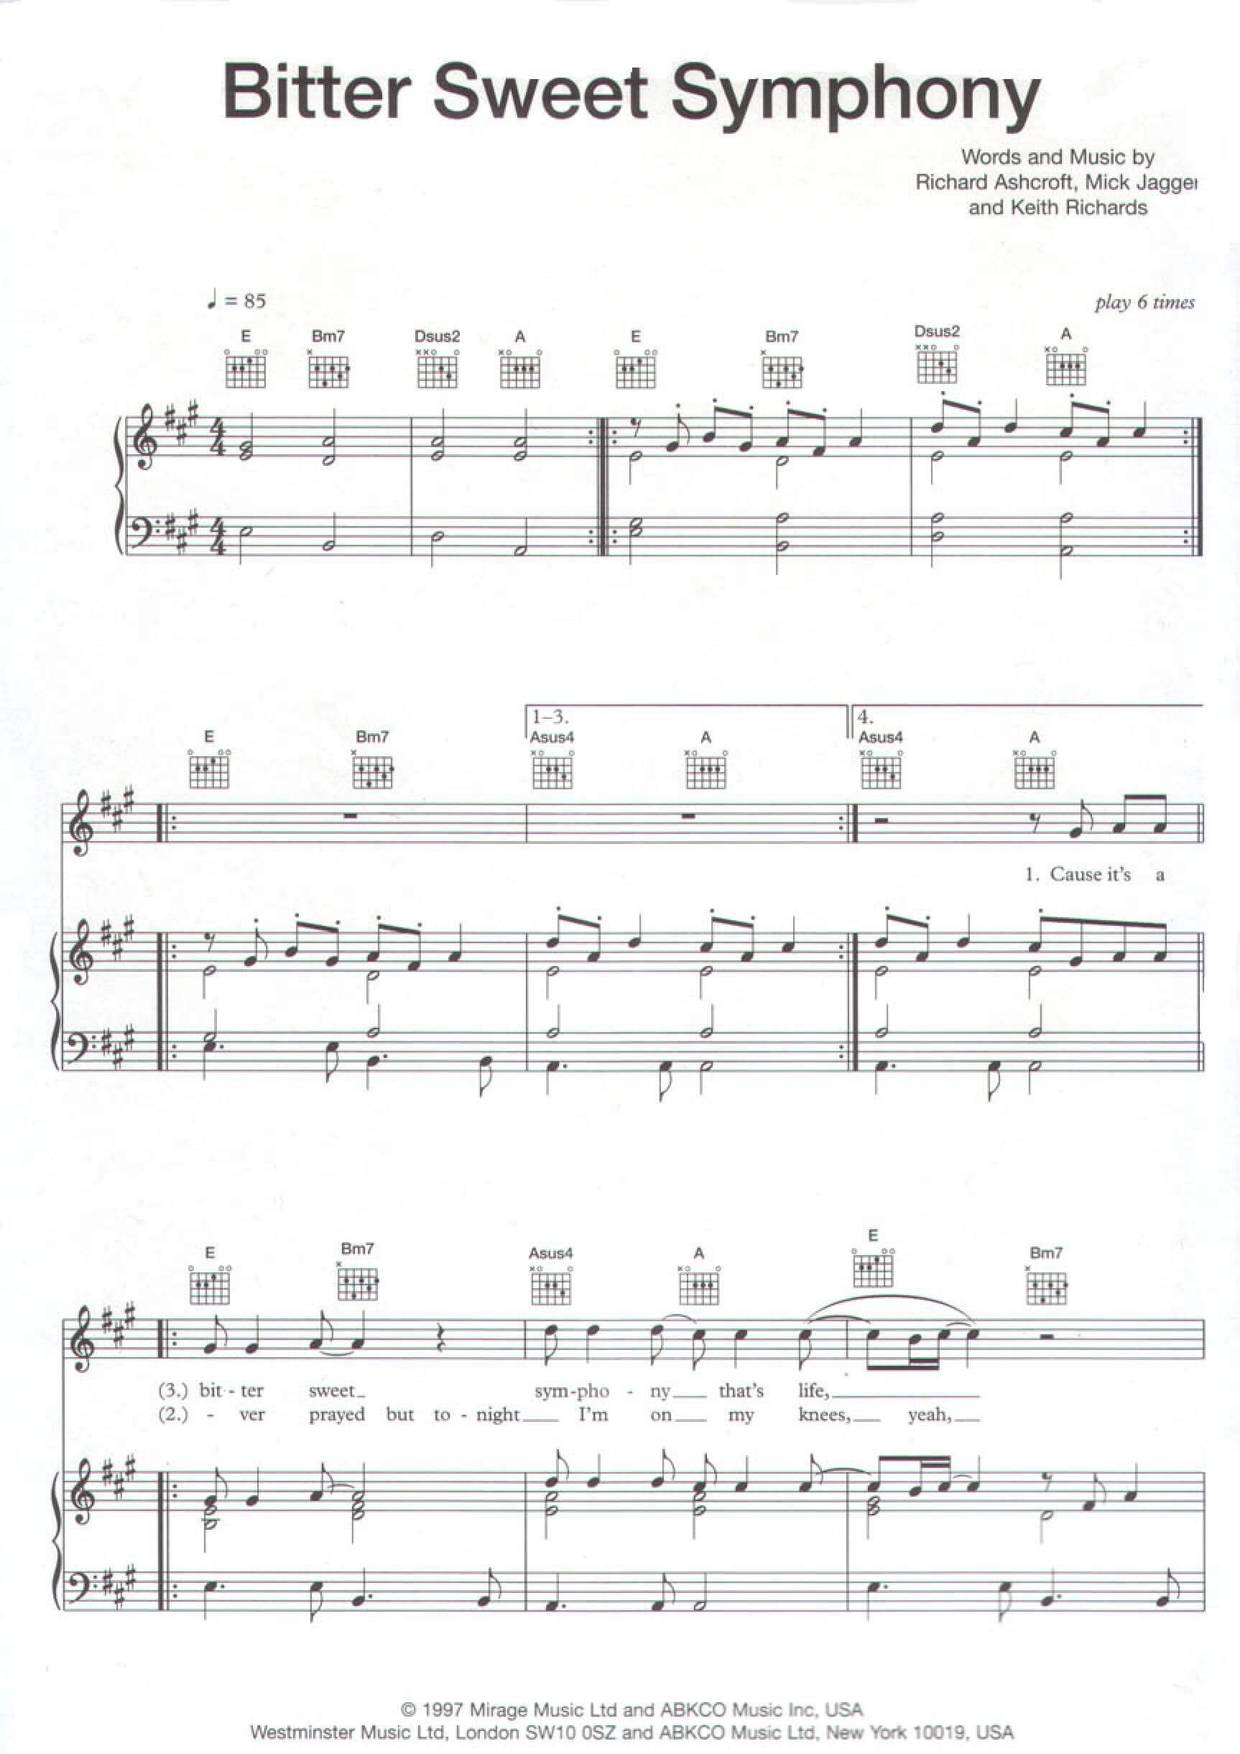 Bittersweet Symphony Score